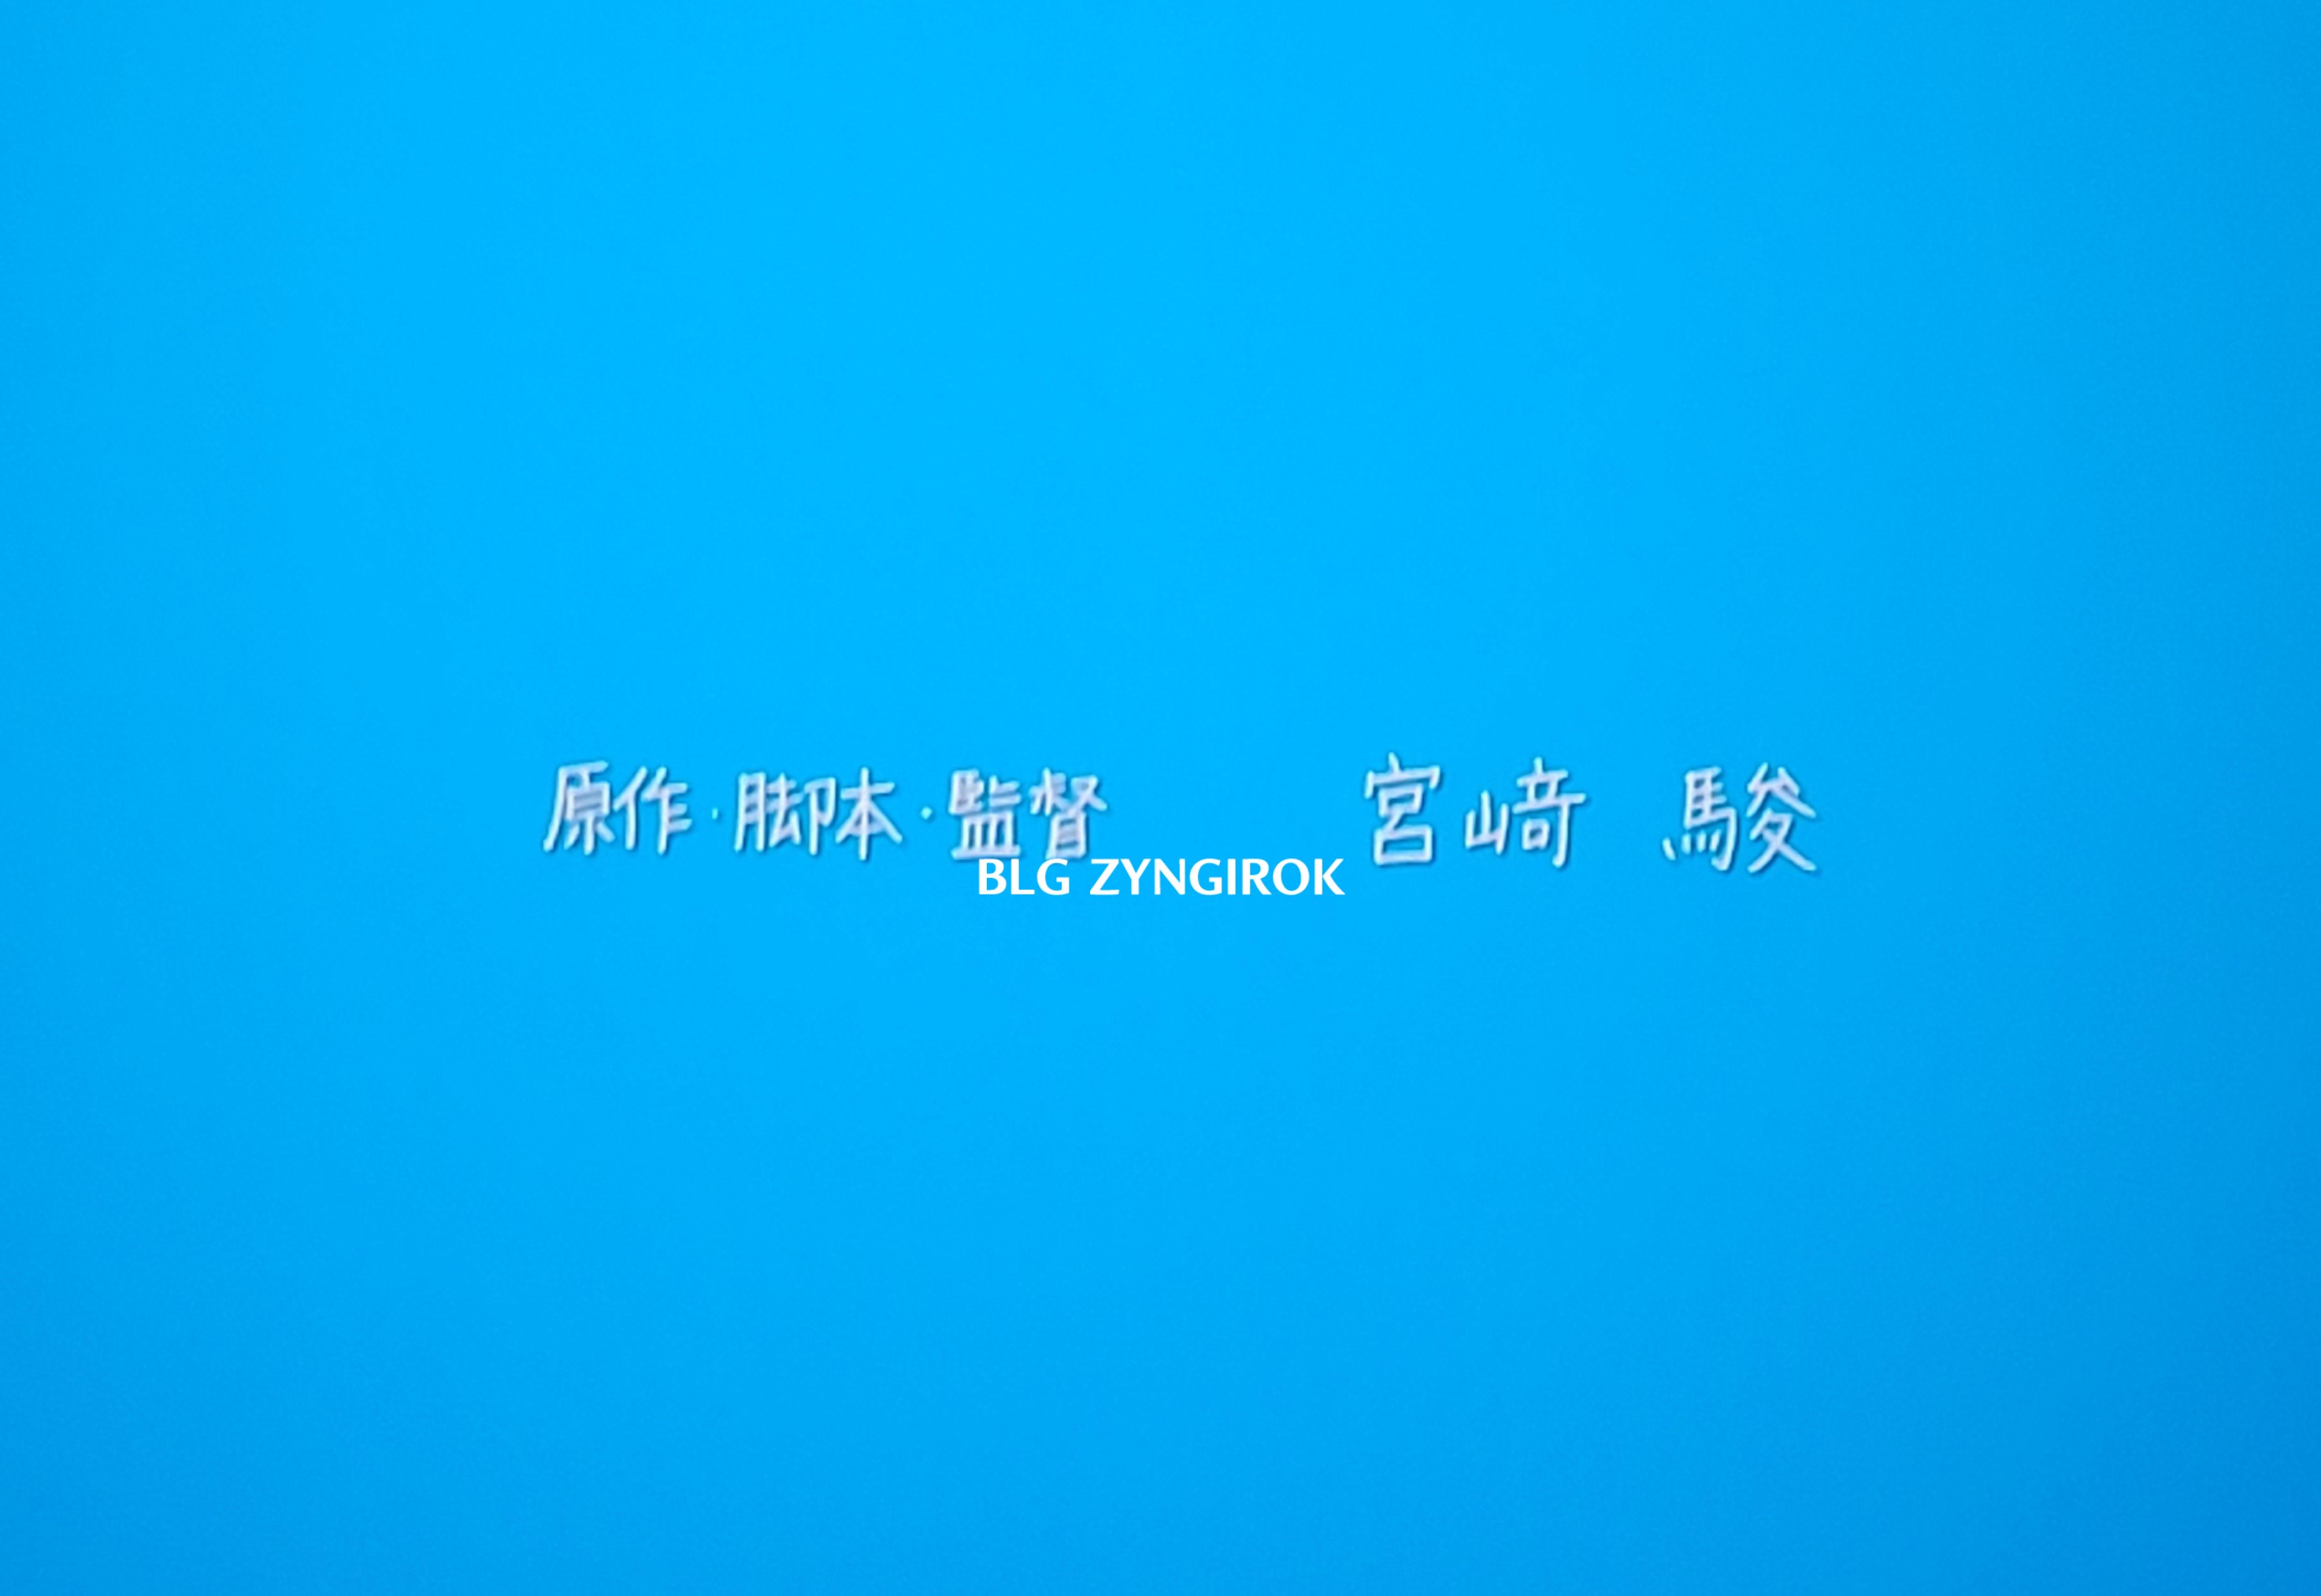 마지막 엔딩크레딧에서 미야자키 하야오 감독 이름이 뜬 모습을 찍은 모습이다.